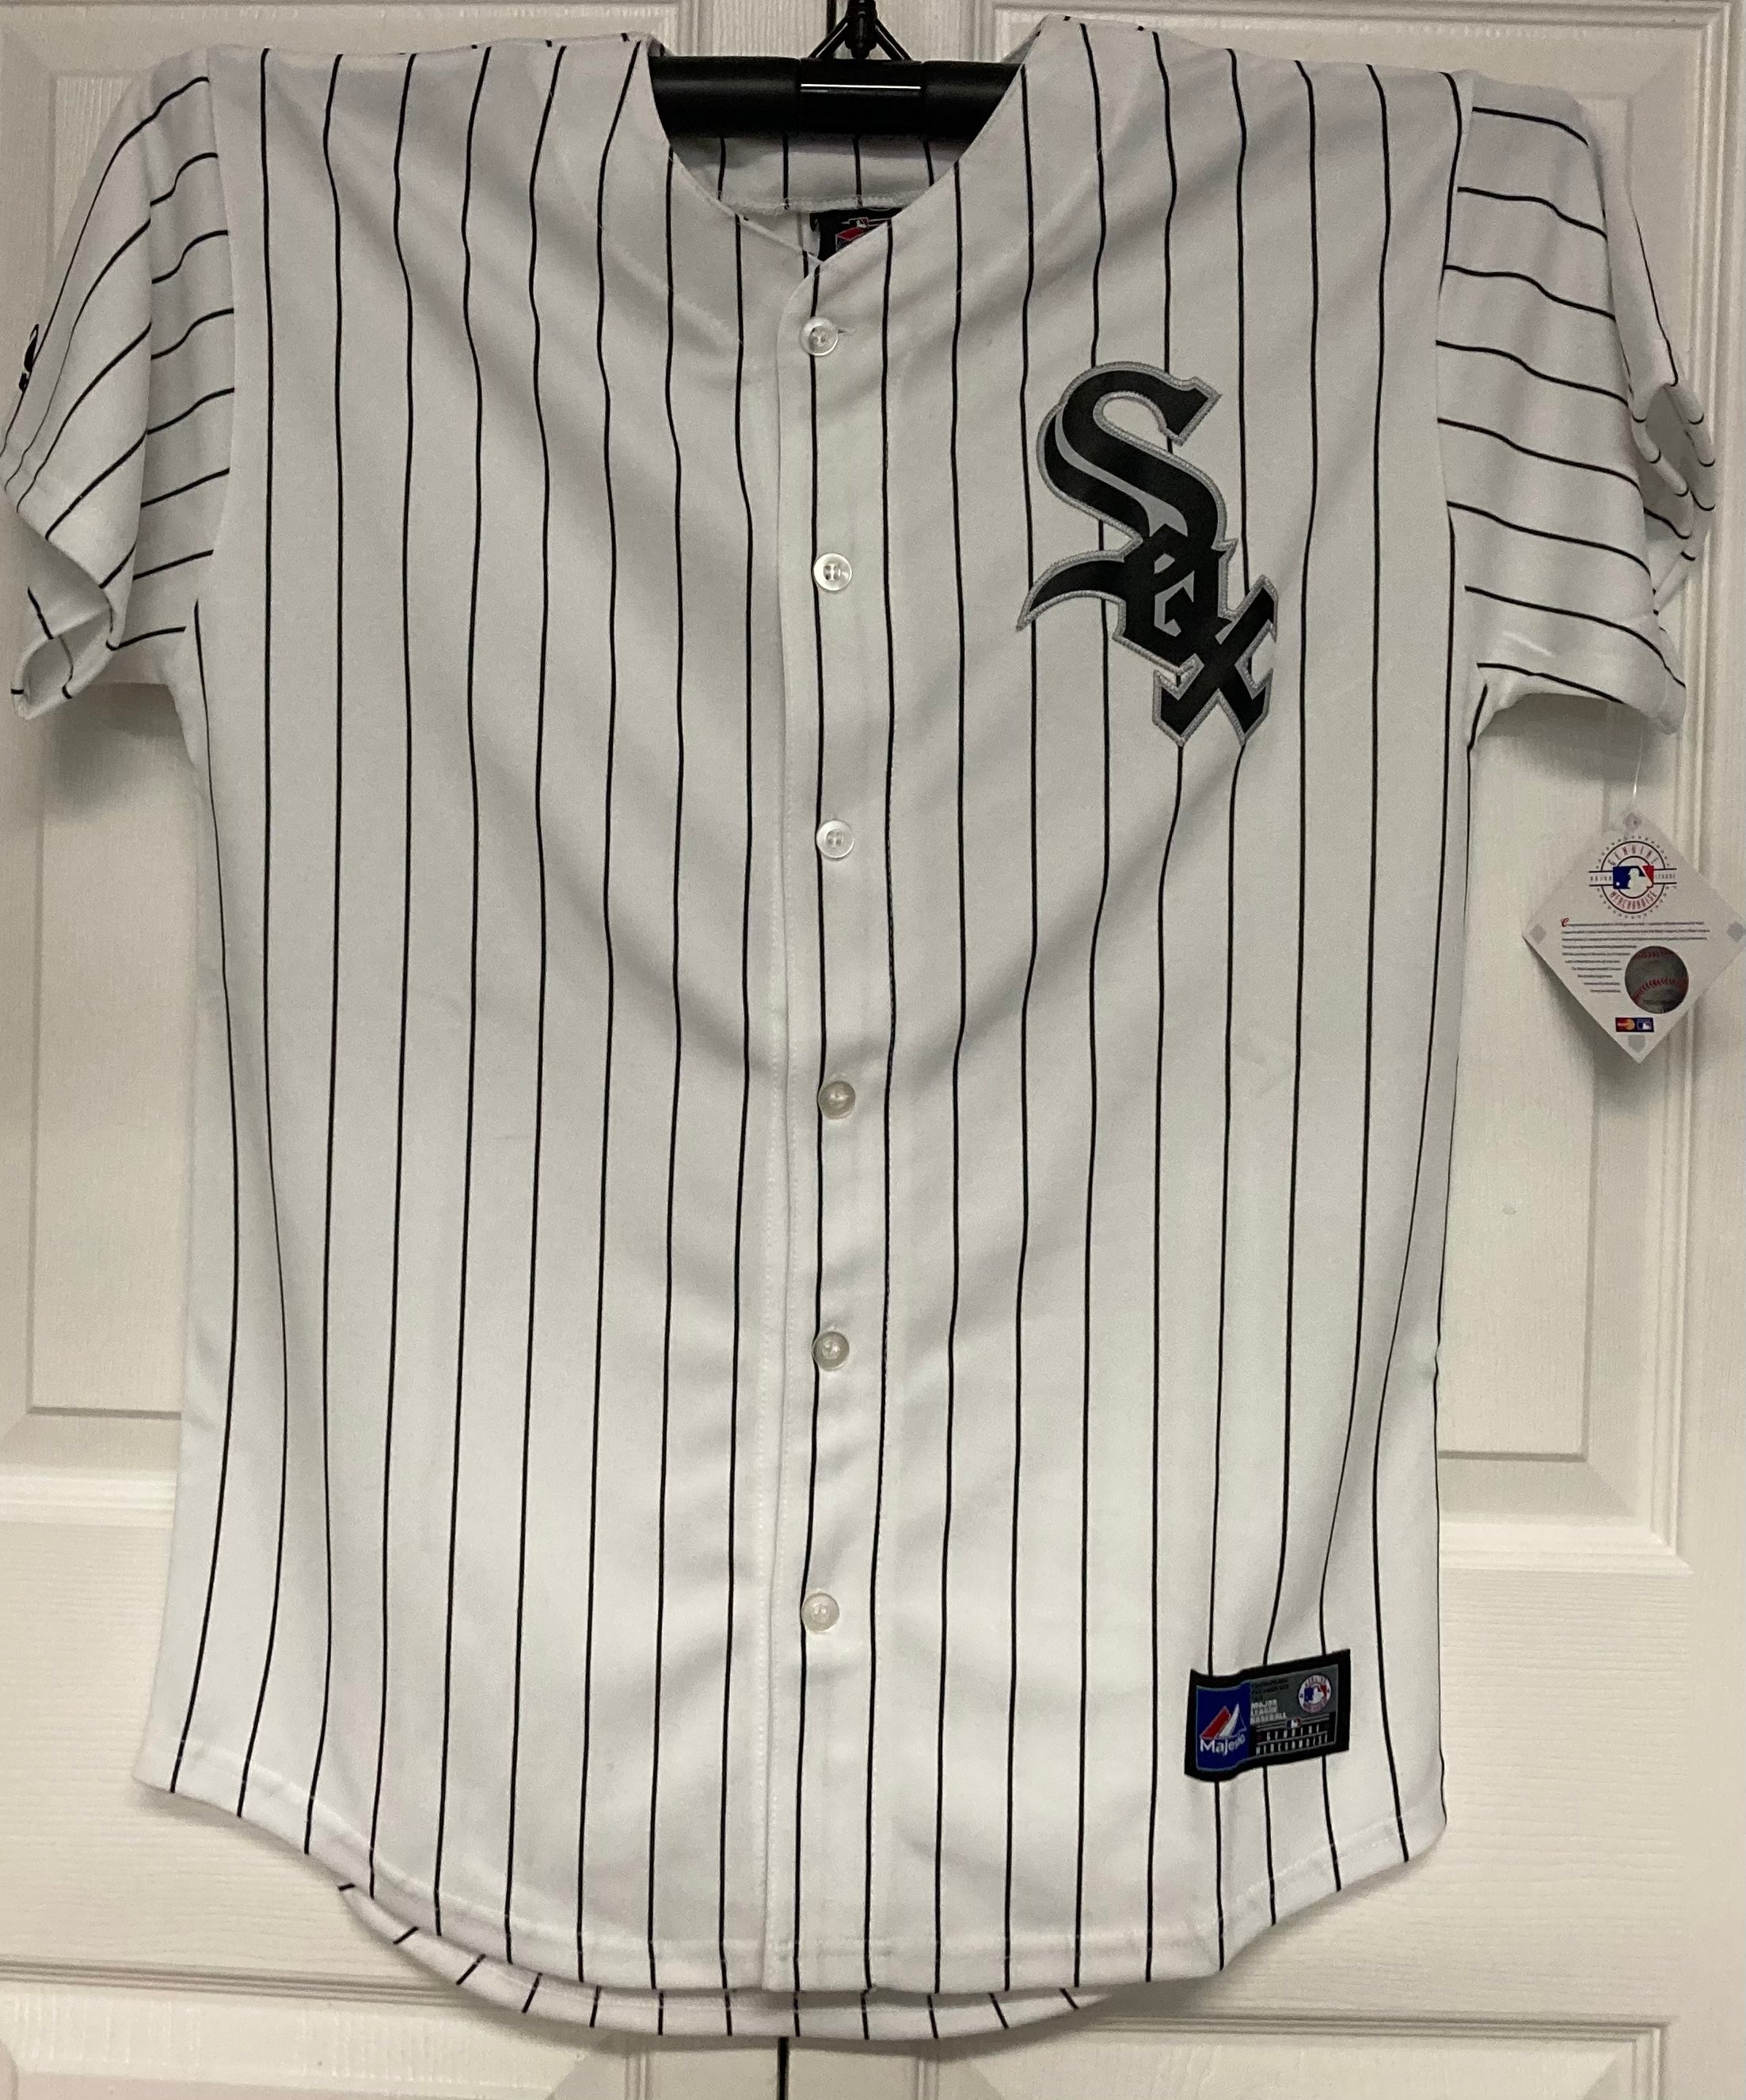 Chicago White Sox Alternate Uniform - American League (AL) - Chris